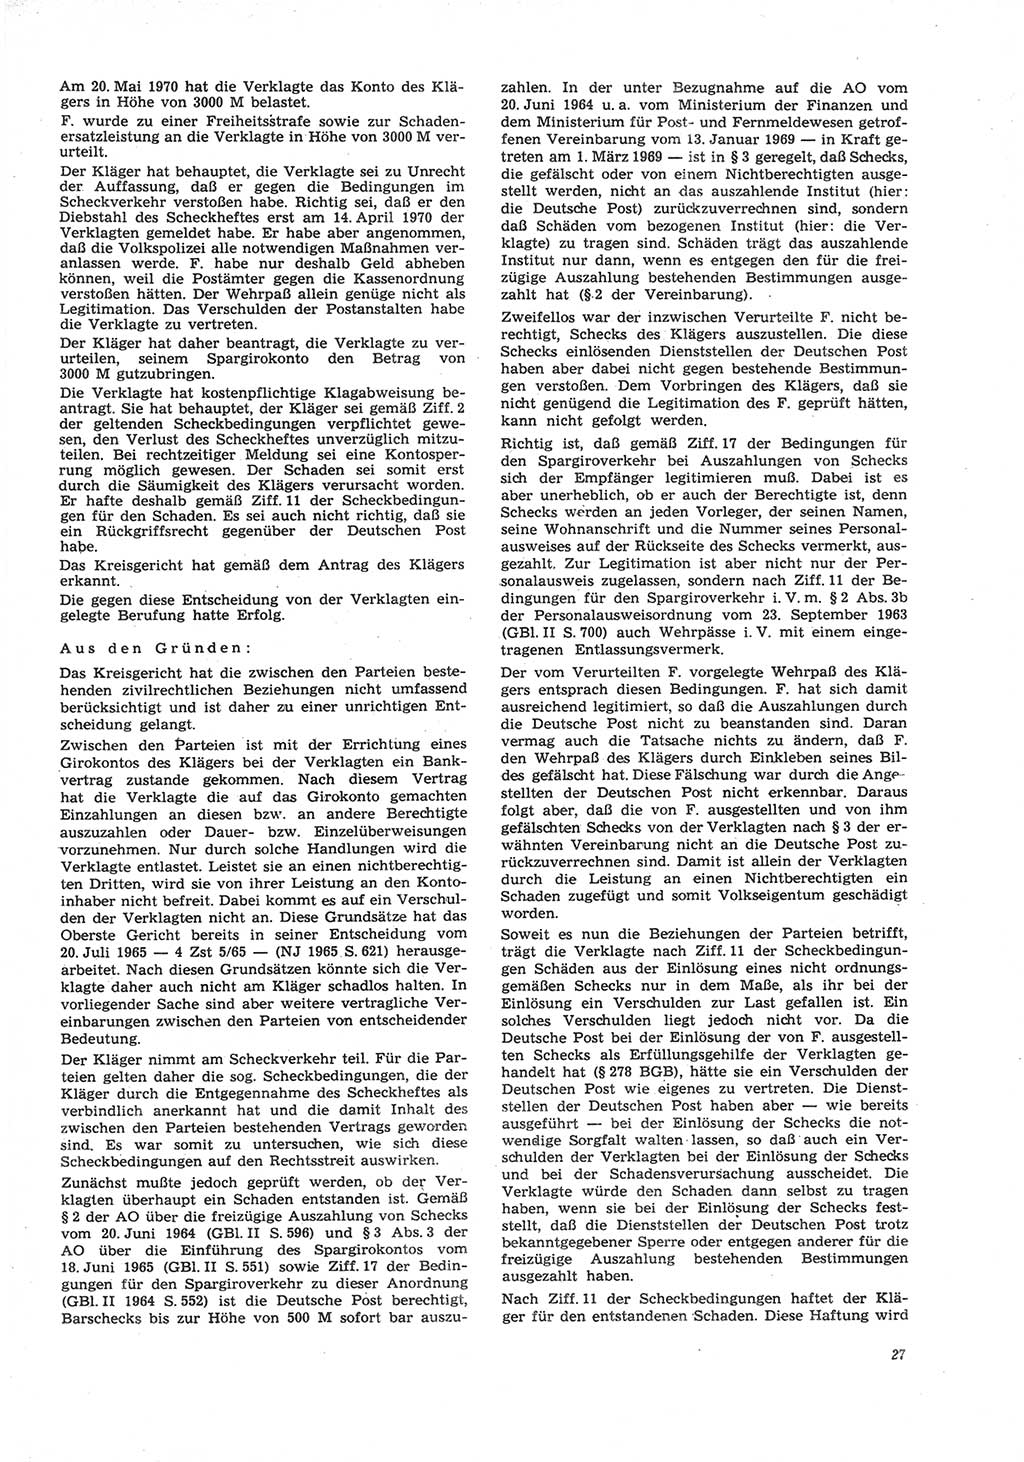 Neue Justiz (NJ), Zeitschrift für Recht und Rechtswissenschaft [Deutsche Demokratische Republik (DDR)], 26. Jahrgang 1972, Seite 27 (NJ DDR 1972, S. 27)